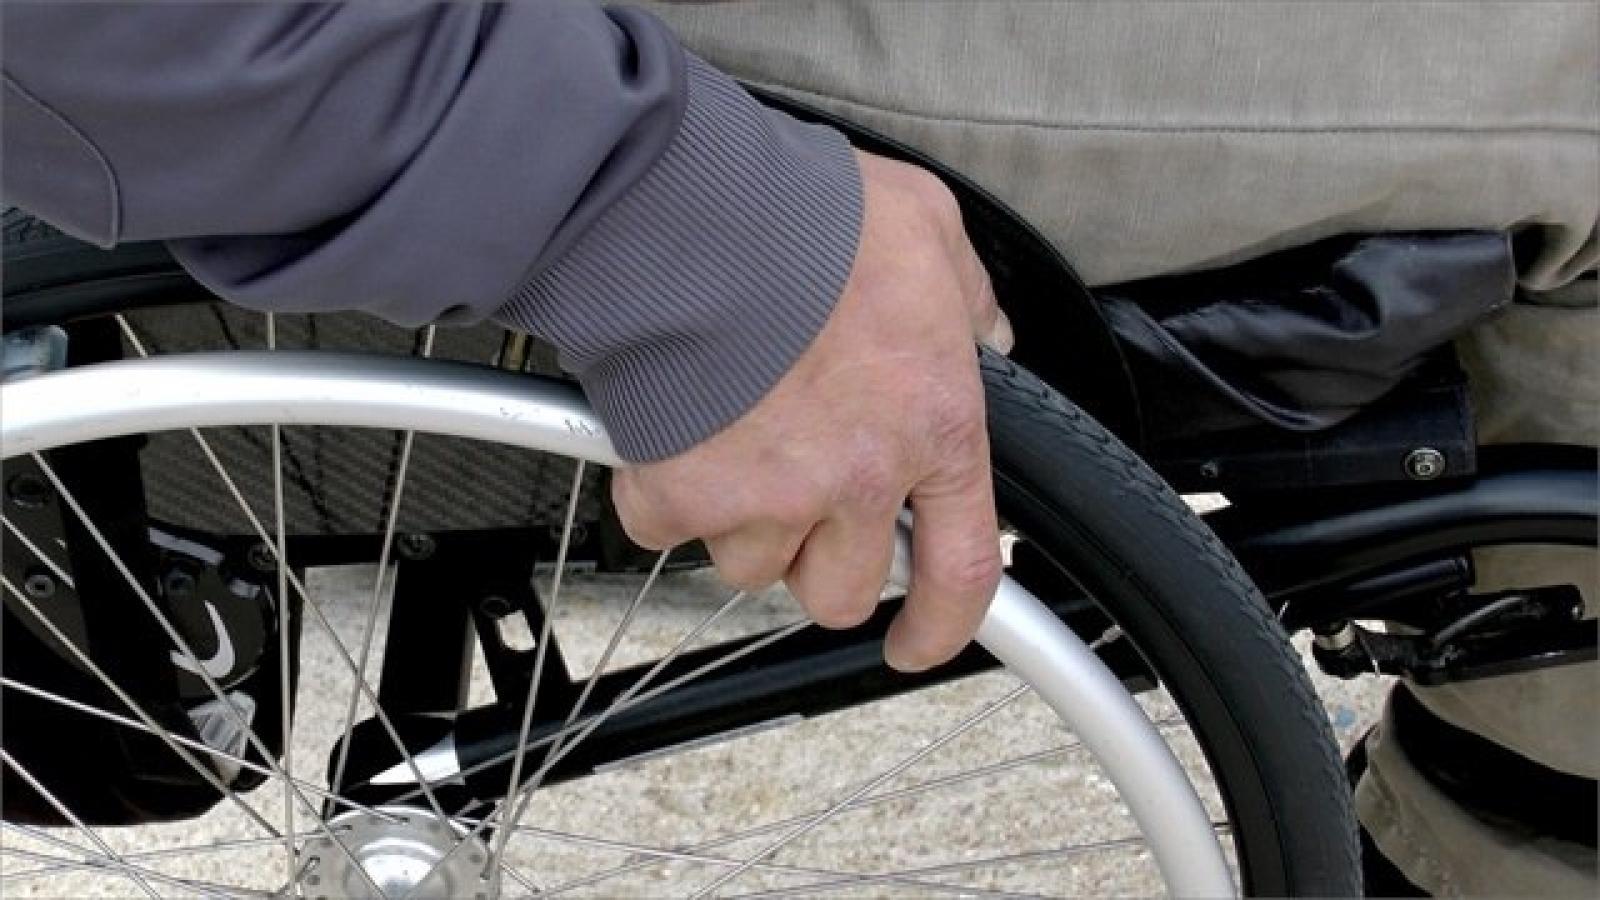 Безработный вологжанин украл из подъезда инвалидную коляску